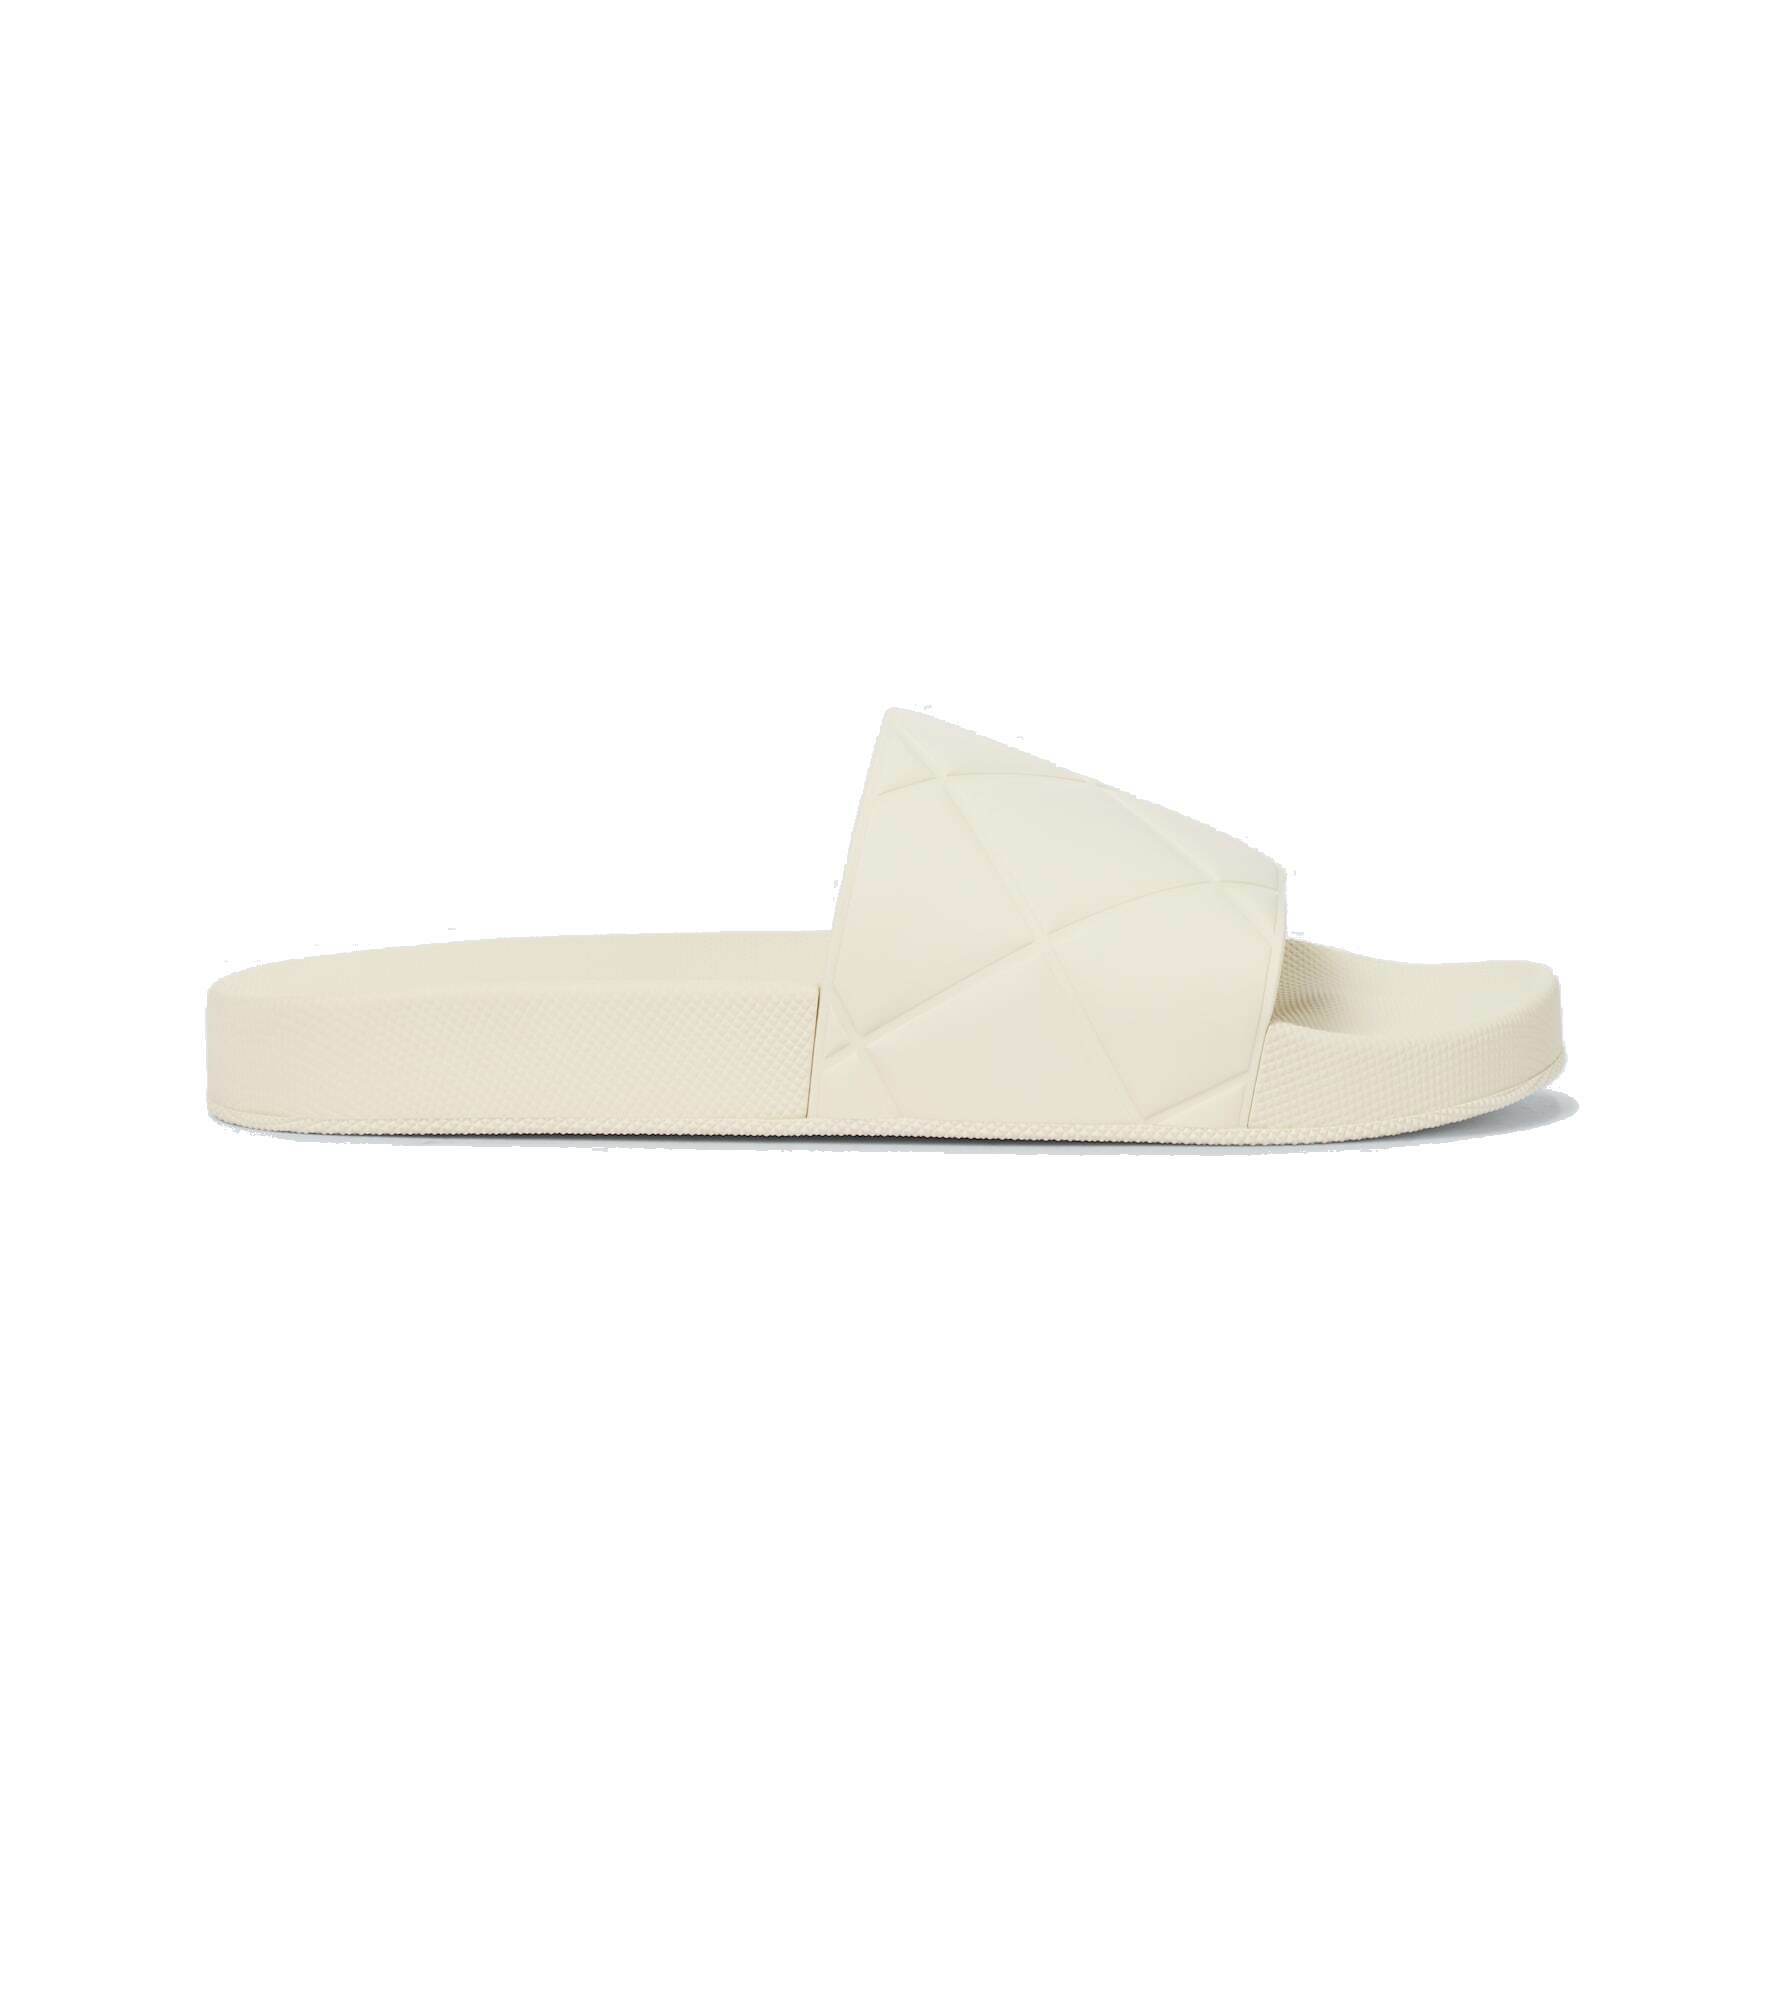 Bottega Veneta - The Slider rubber sandals Bottega Veneta